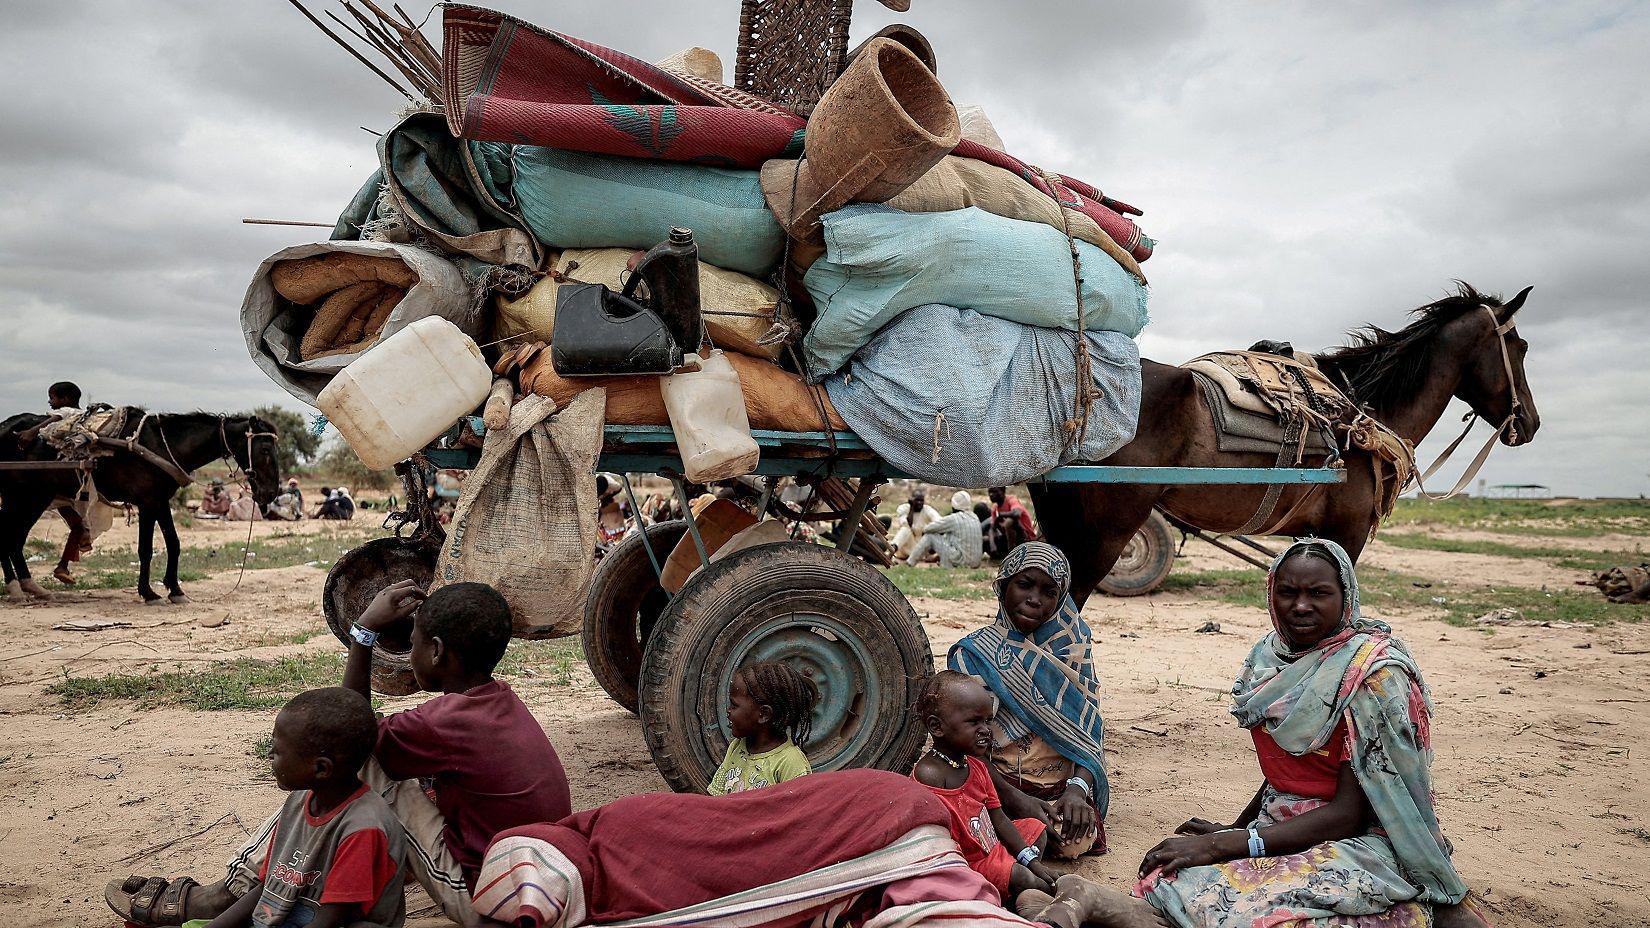 عائلة سودانية فرت من الصراع في مورني في منطقة دارفور بالسودان عند المعبر الحدودي بين السودان وتشاد 